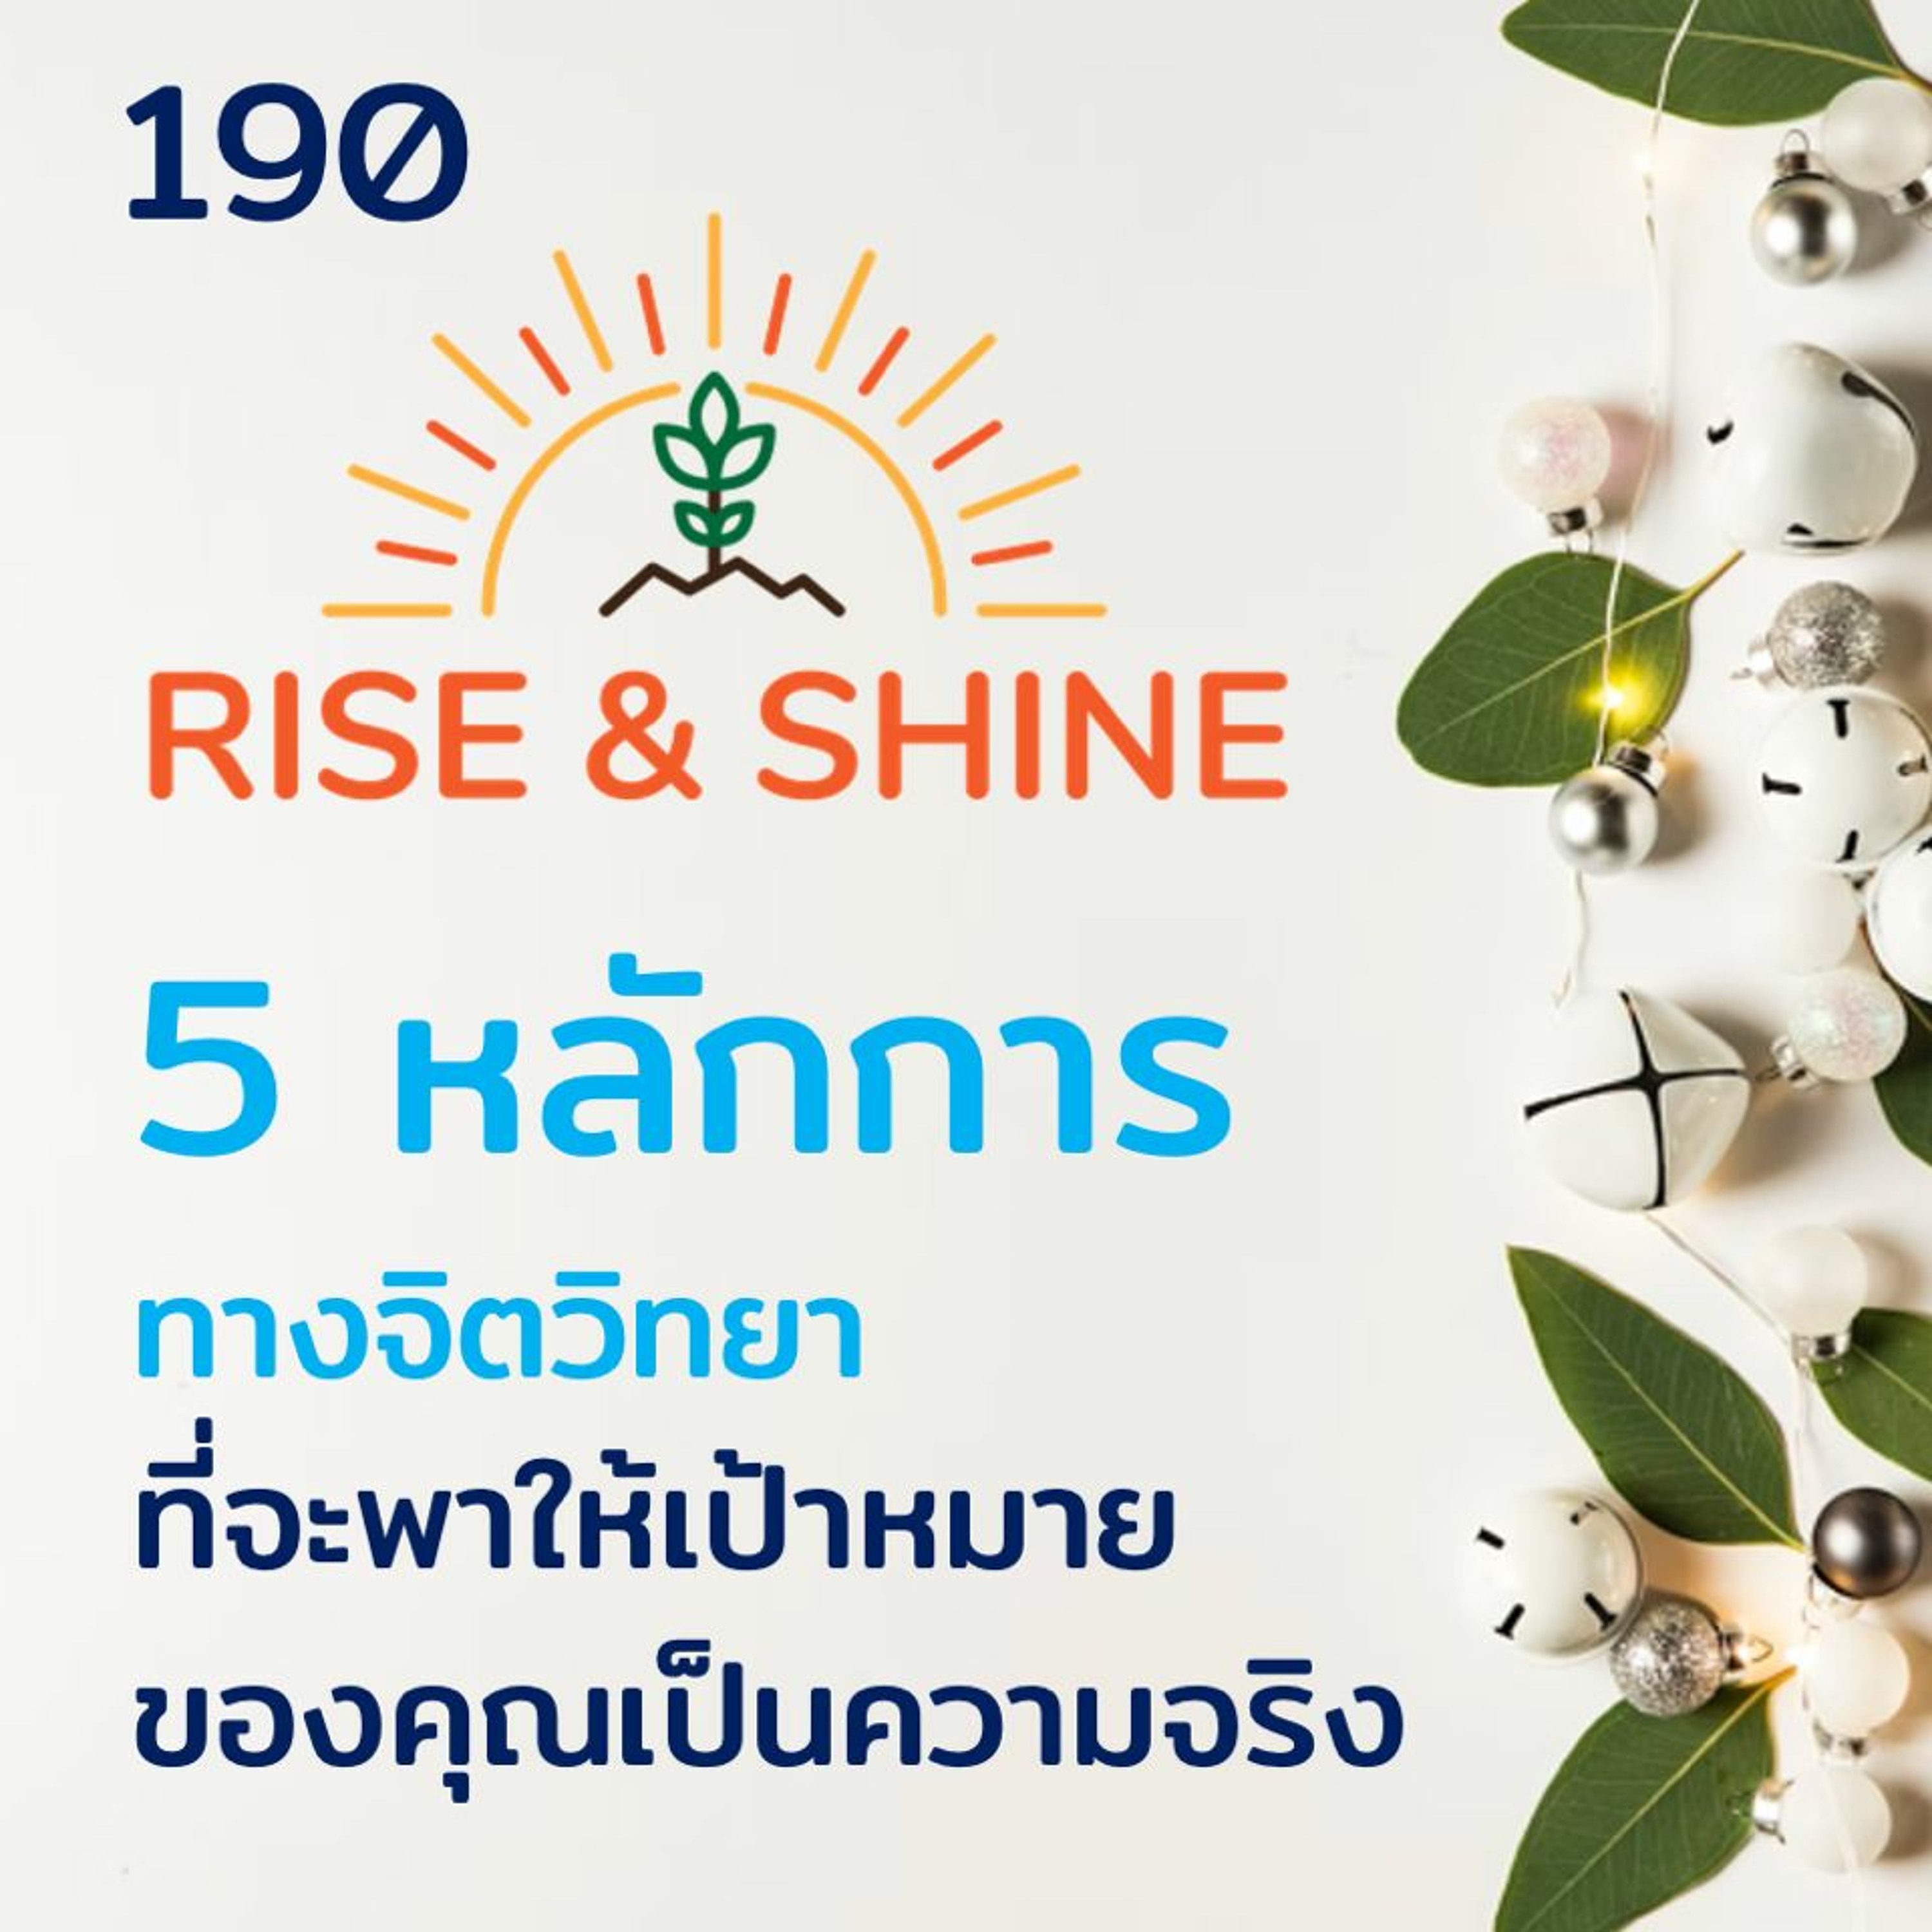 Rise & Shine 190 5 หลักการทางจิตวิทยา ที่จะพาให้เป้าหมายของคุณเป็นความจริง